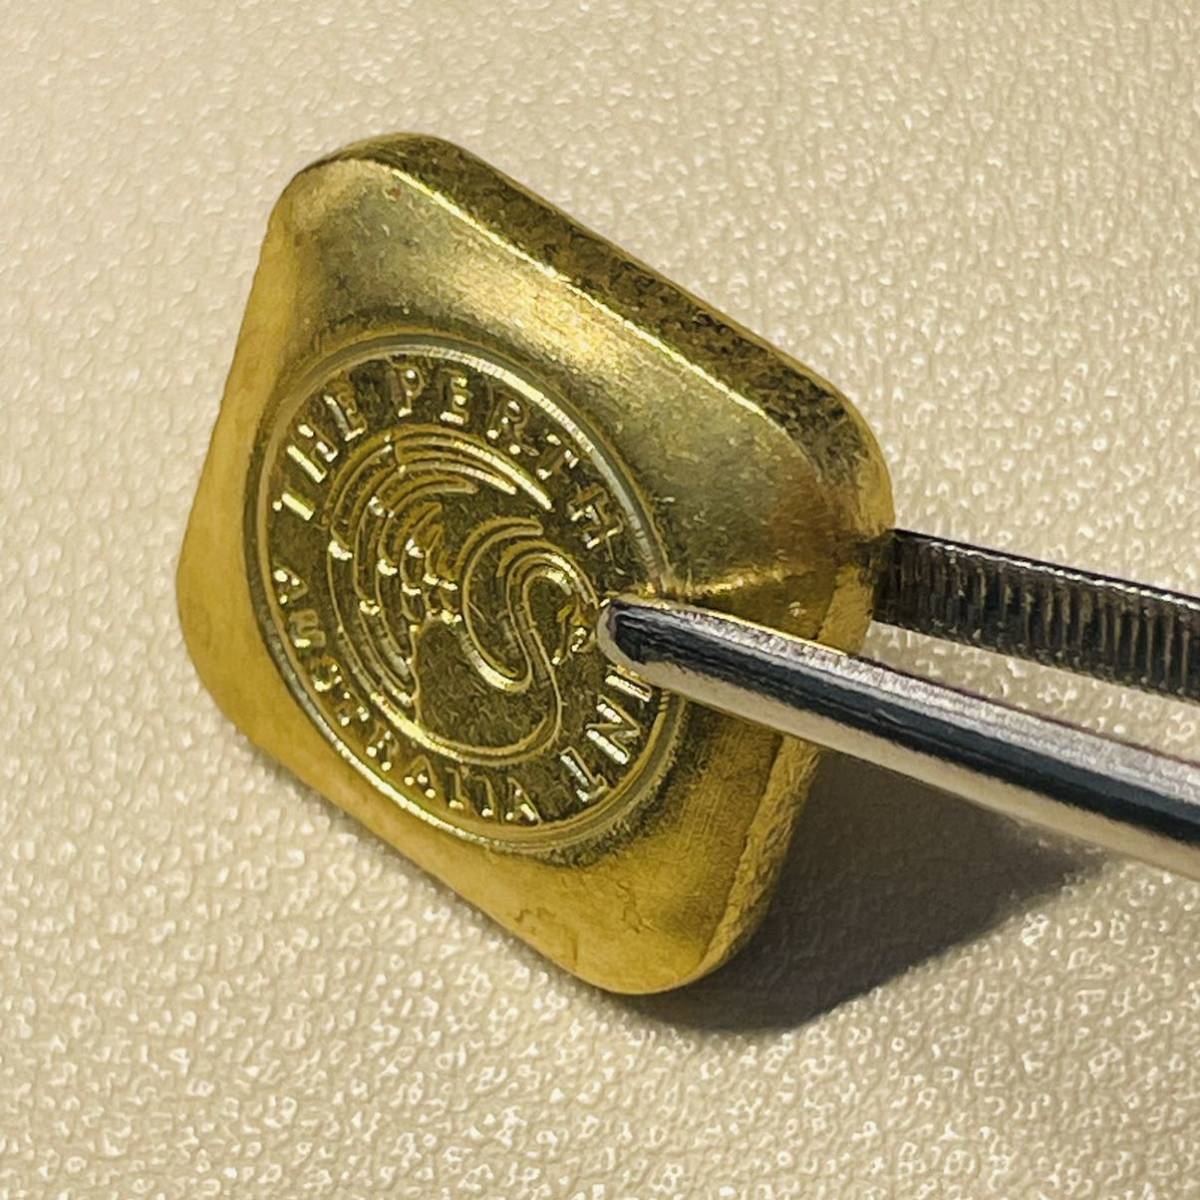 オーストラリア 硬貨 古銭 「パースミント オーストラリア」銘 インゴッド 白鳥 記念幣 メタル 重11.33g_画像3